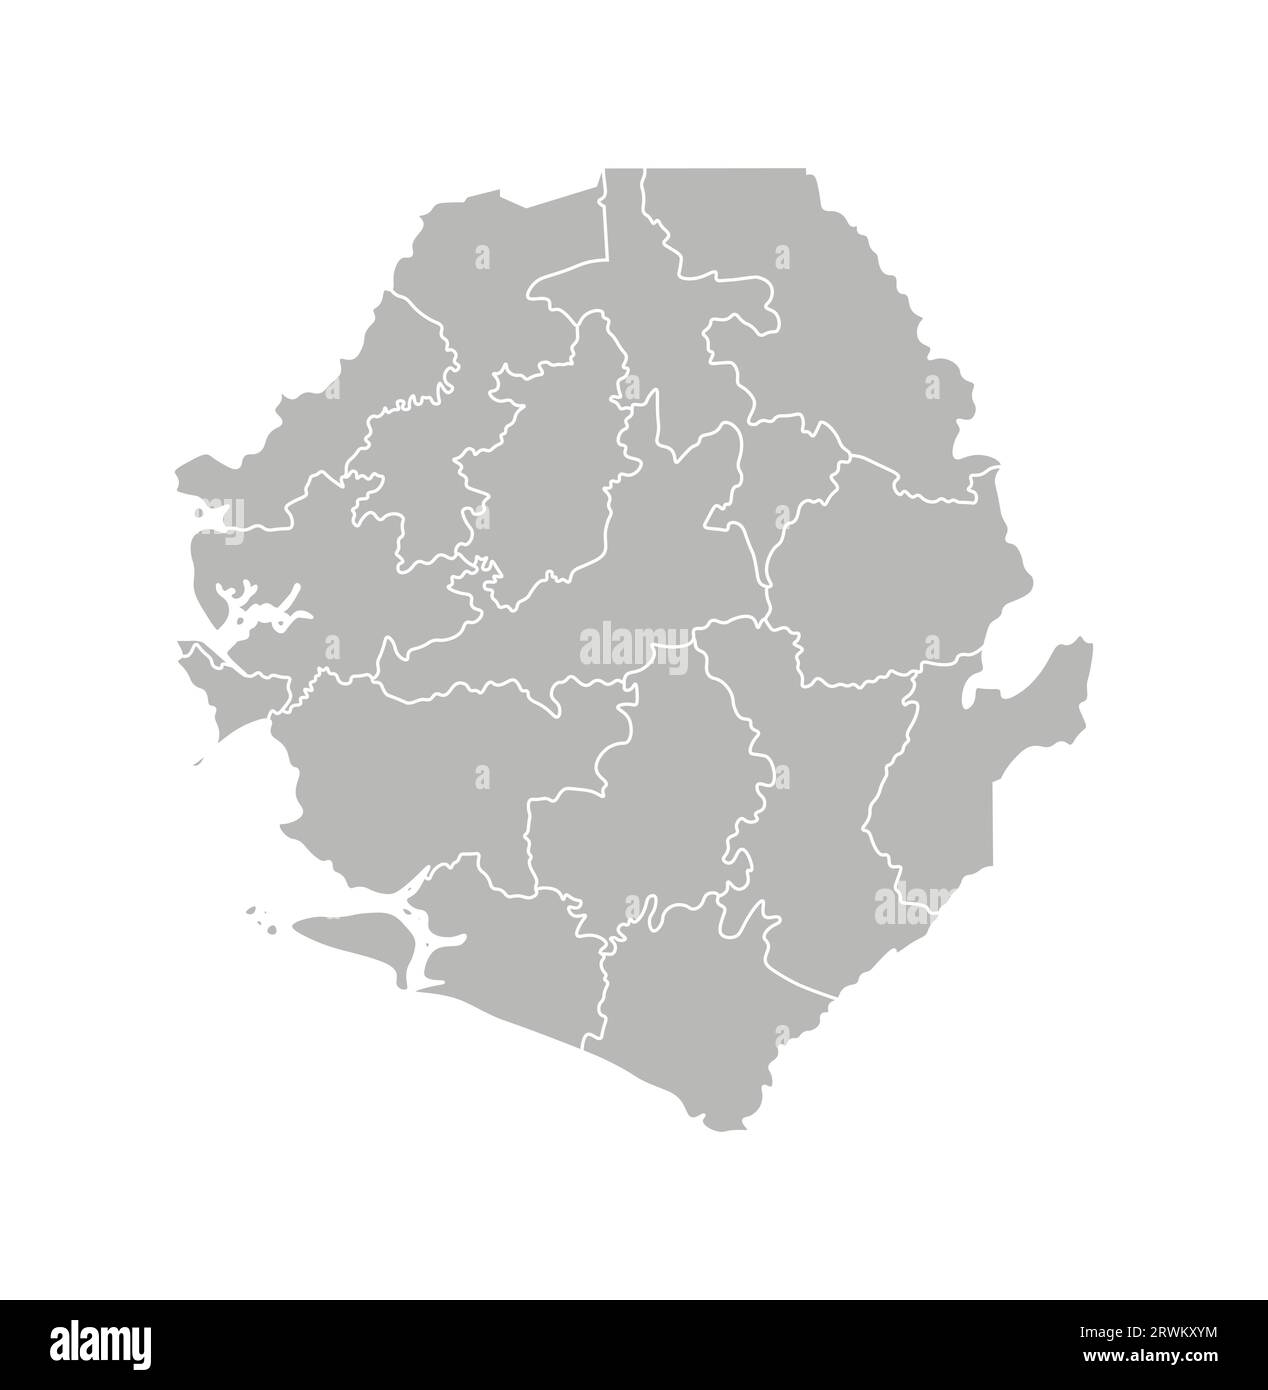 Vektorisolierte Darstellung der vereinfachten Verwaltungskarte Sierra Leones. Grenzen der Bezirke (Regionen). Graue Silhouetten. Weiße Umrandung. Stock Vektor